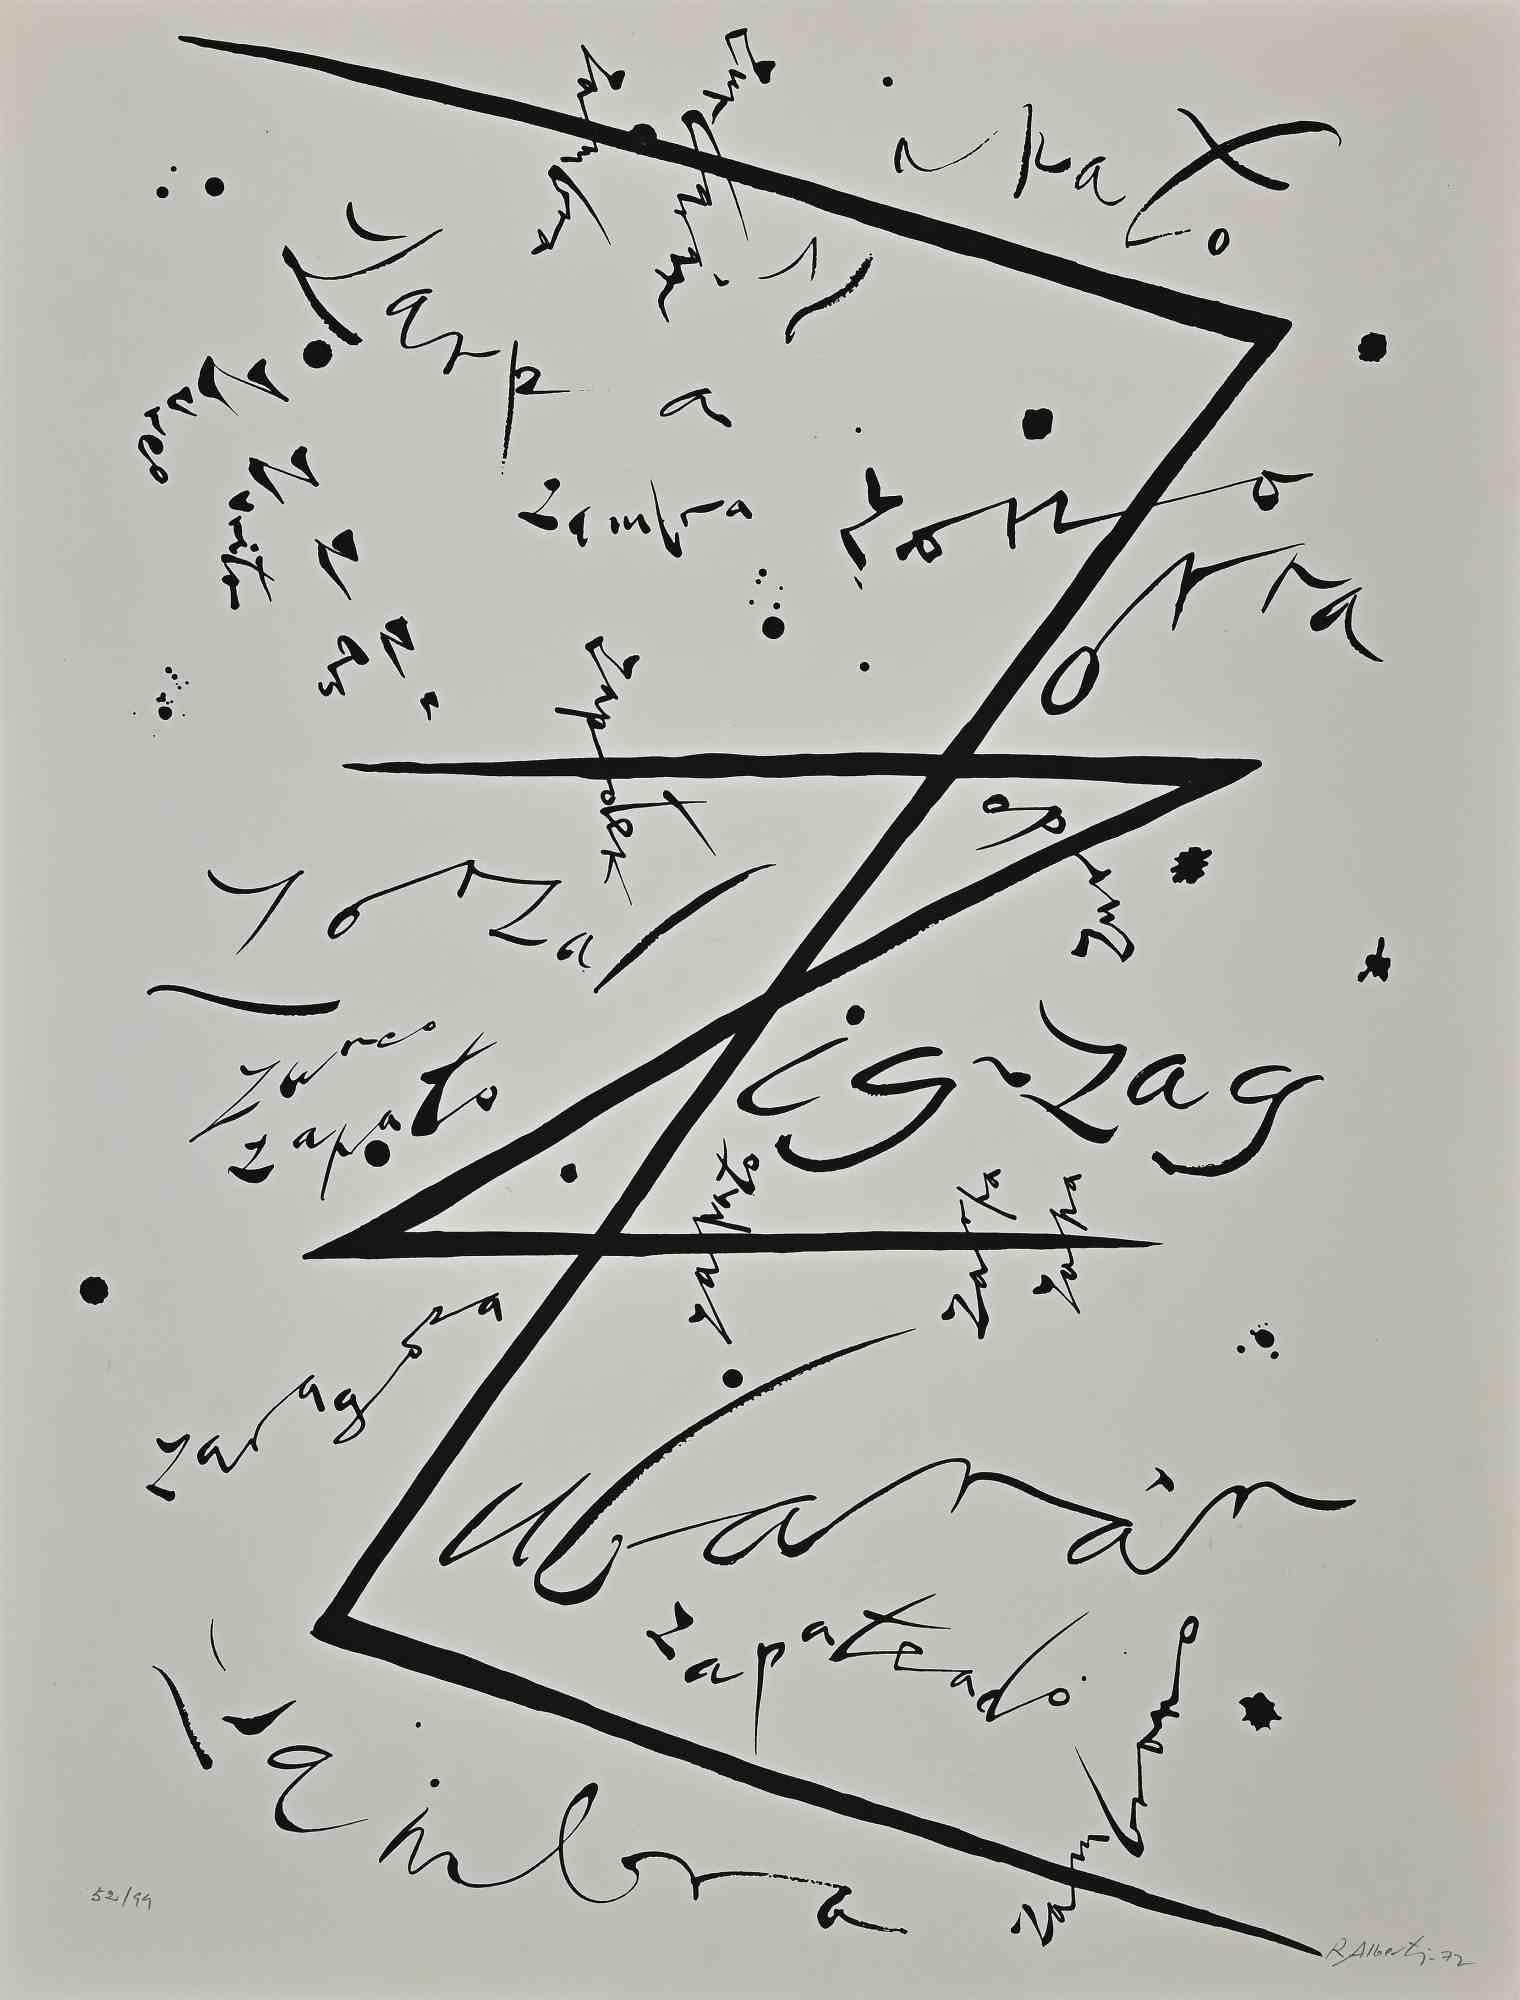 Buchstabe Z   aus der Serie Alphabet ist eine Lithographie von Rafael Alberti aus dem Jahr 1972.

Am unteren Rand handsigniert und datiert.

Am unteren Rand nummeriert. Ausgabe 52/99

Gute Bedingungen

Das Kunstwerk stellt Alphabet Buchstabe Z, mit